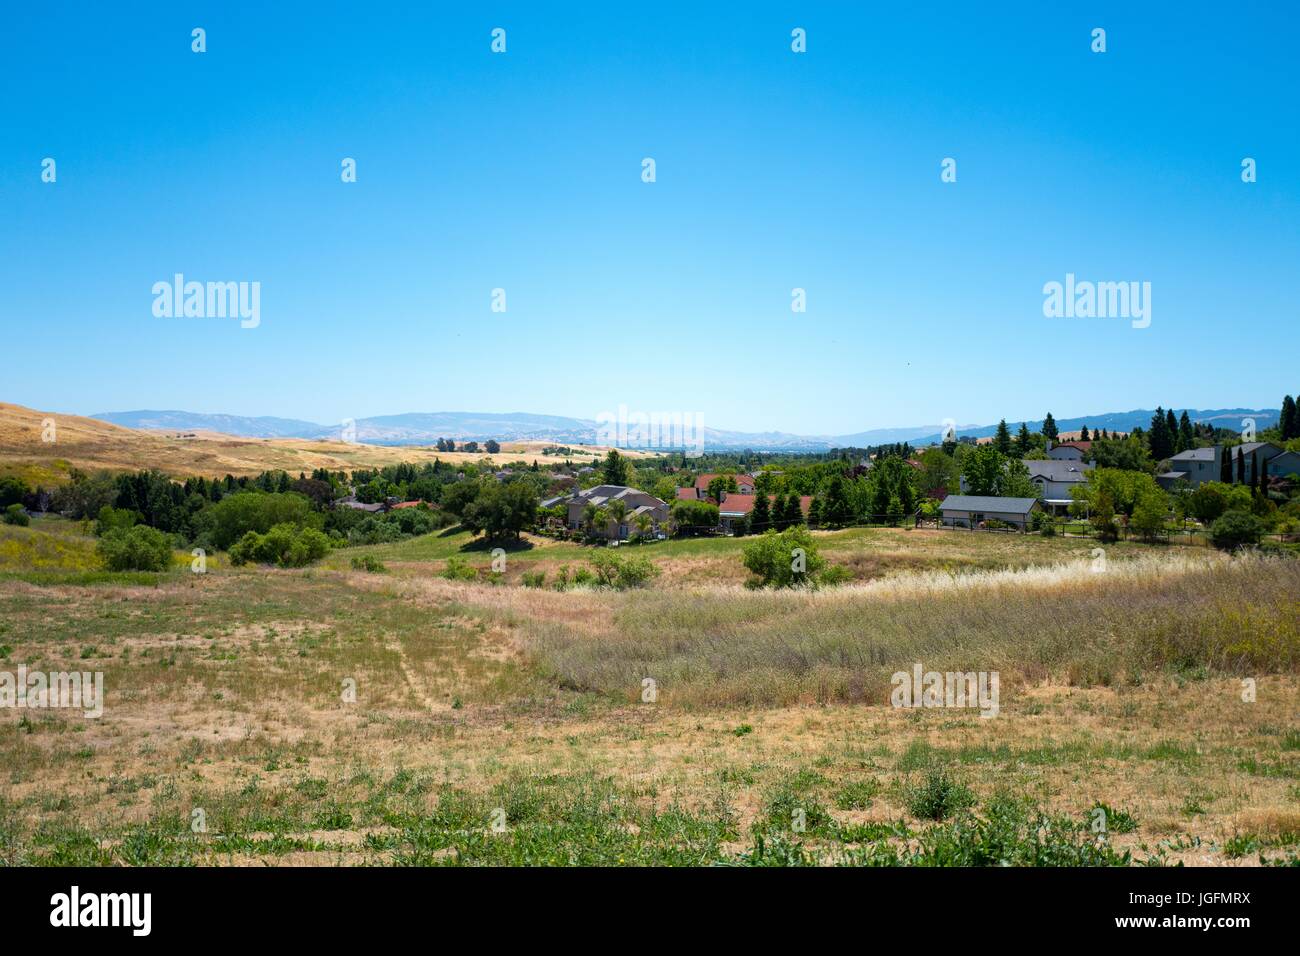 Erba secca, nuove case e le colline circostanti sono visibili in San Ramon Valley, parte della East Bay parte dell'Area della Baia di San Francisco, San Ramon, California, 4 giugno 2017. Foto Stock